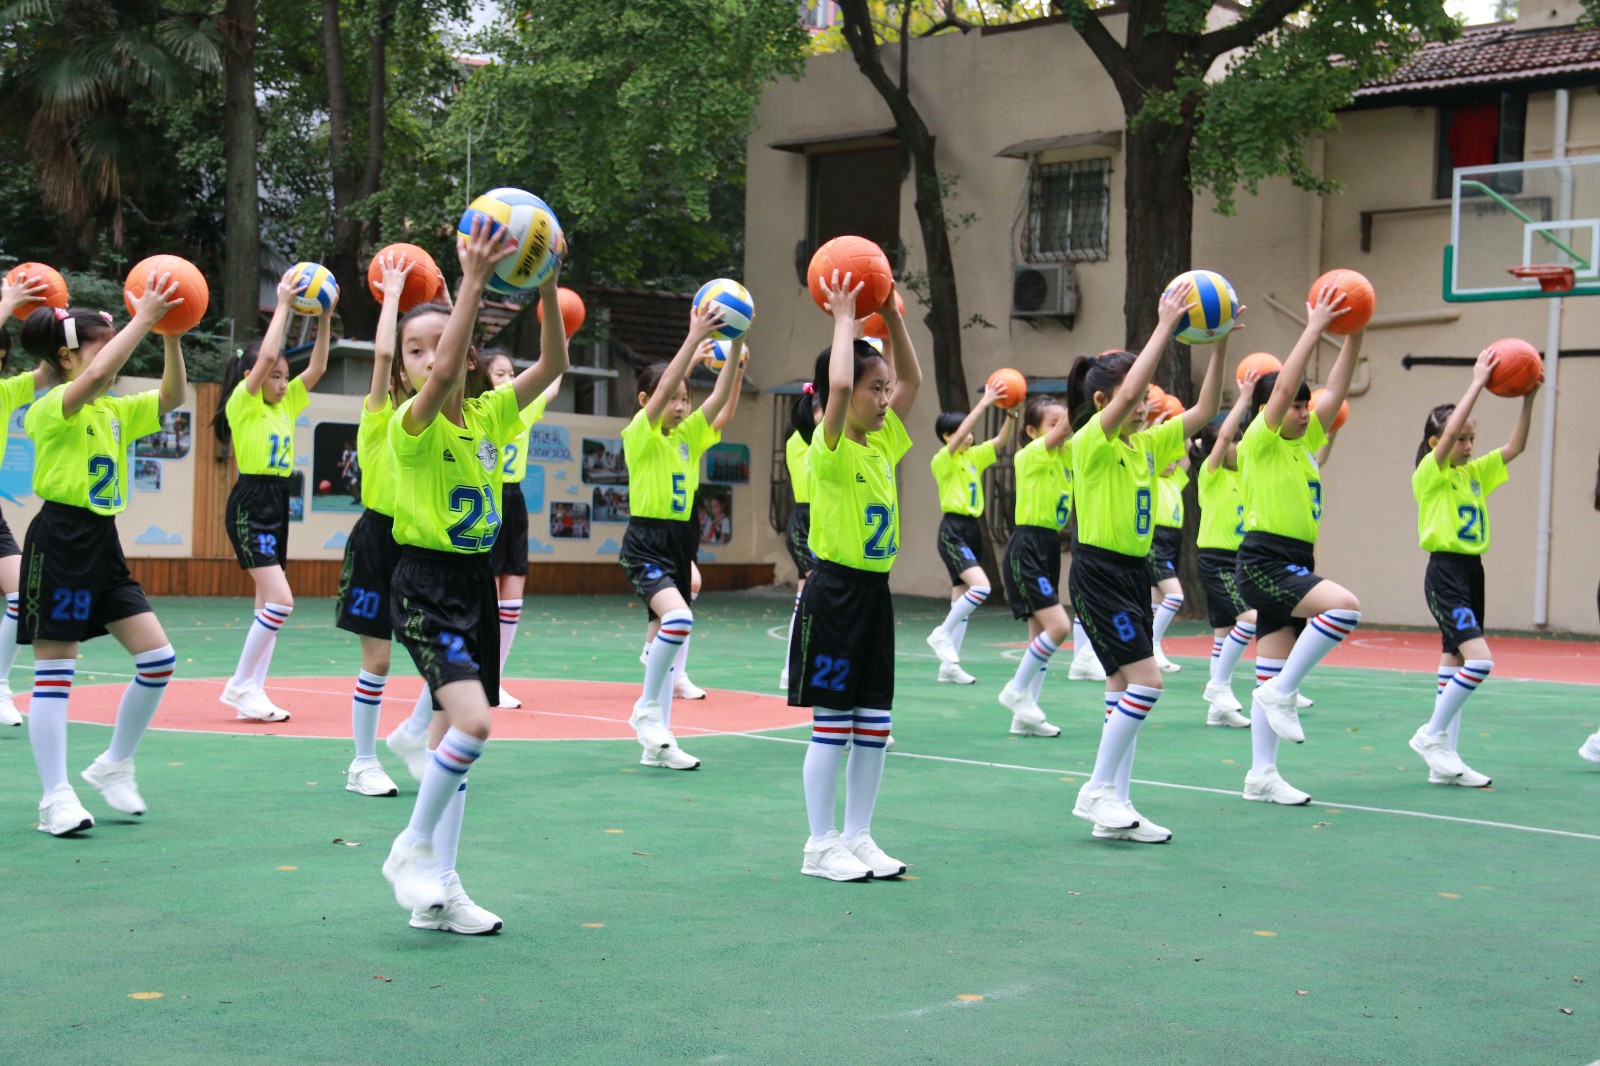 【3-3-10-25】上海世界小学十三届三次教代会开幕式 - 内容 - 世界小学